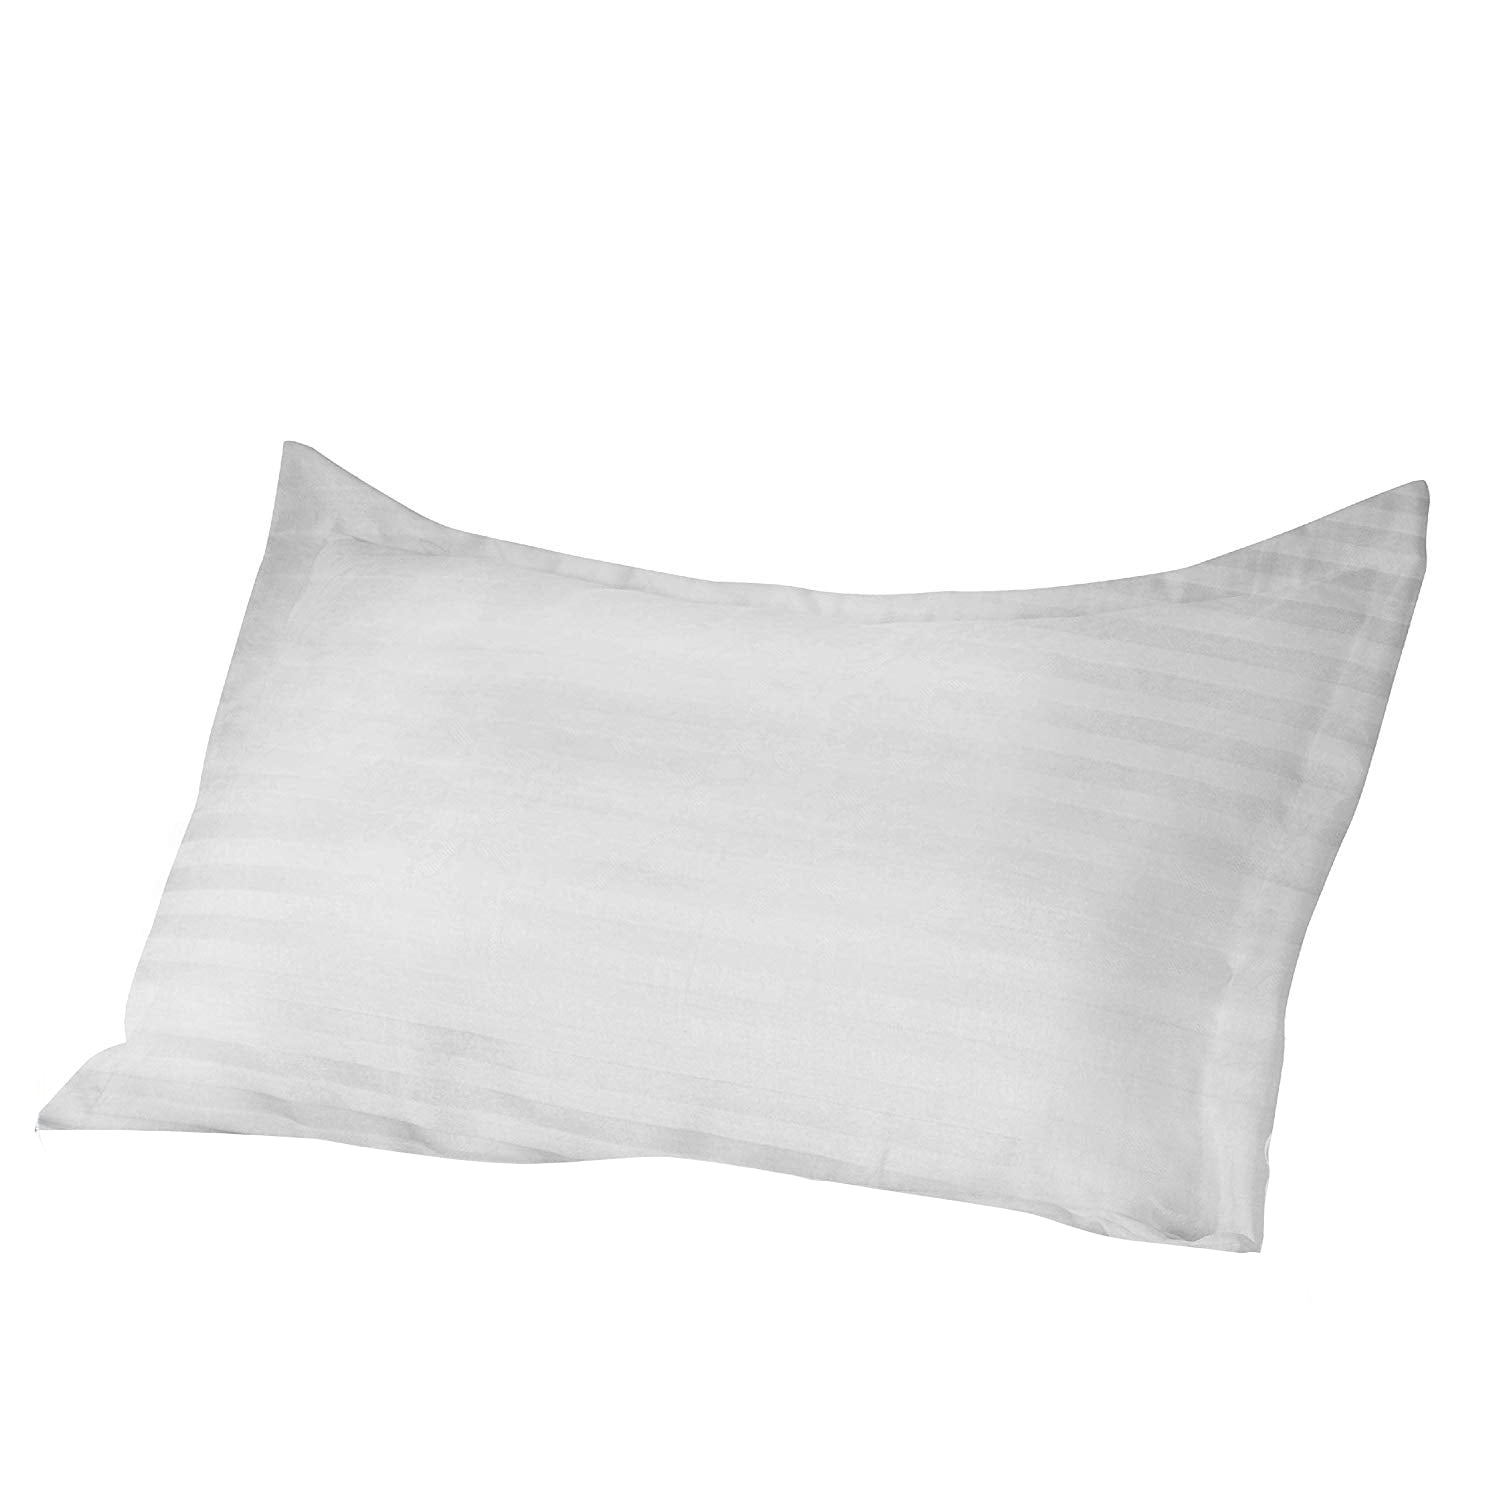 anti bacterial pillow